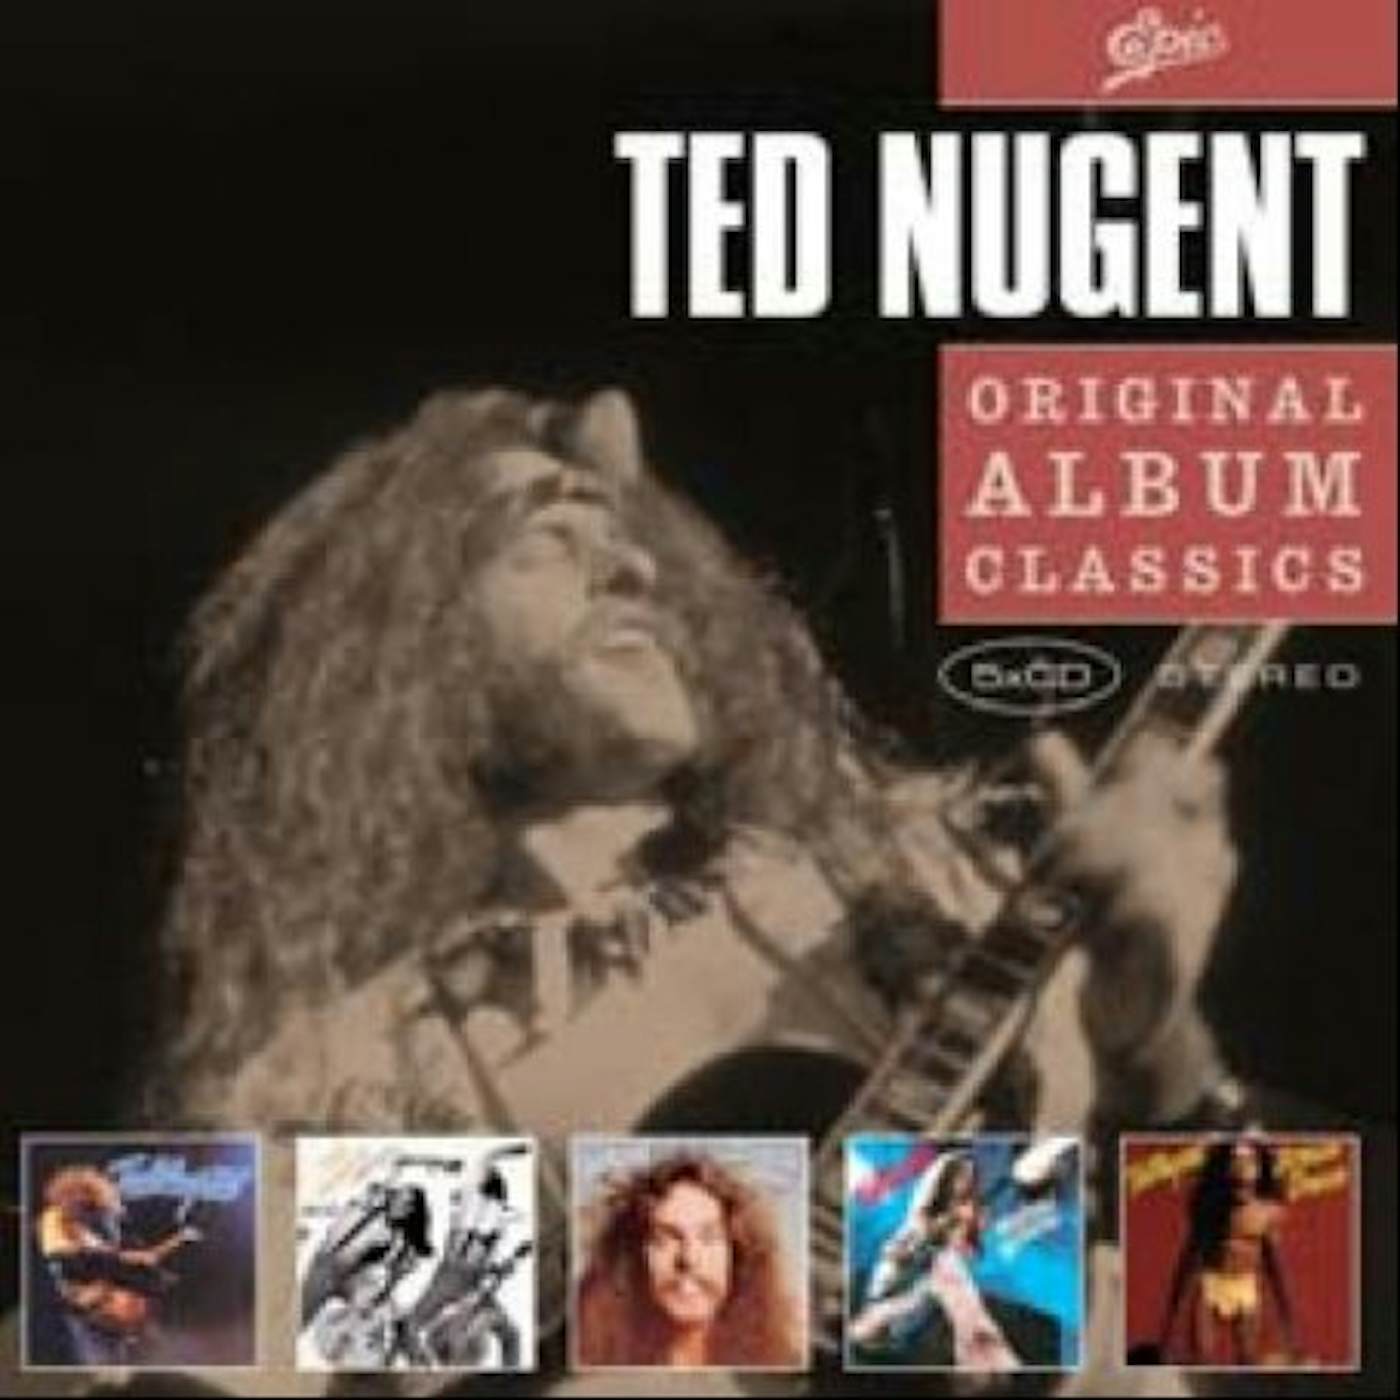 Ted Nugent ORIGINAL ALBUM CLASSICS CD